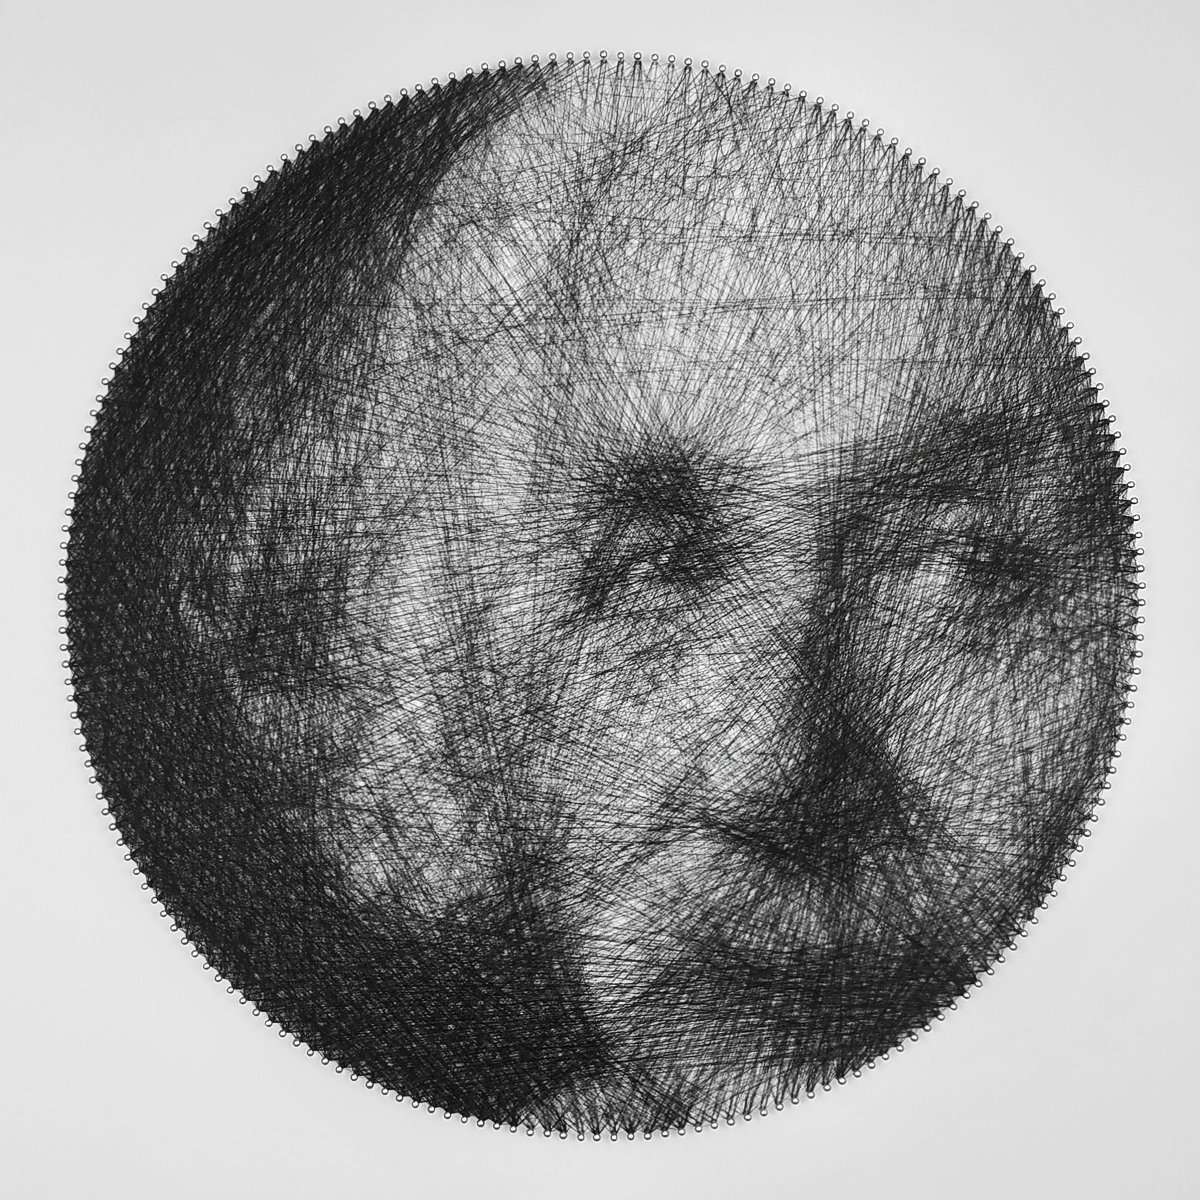 Albert Einstein string art portrait by Andrey Saharov